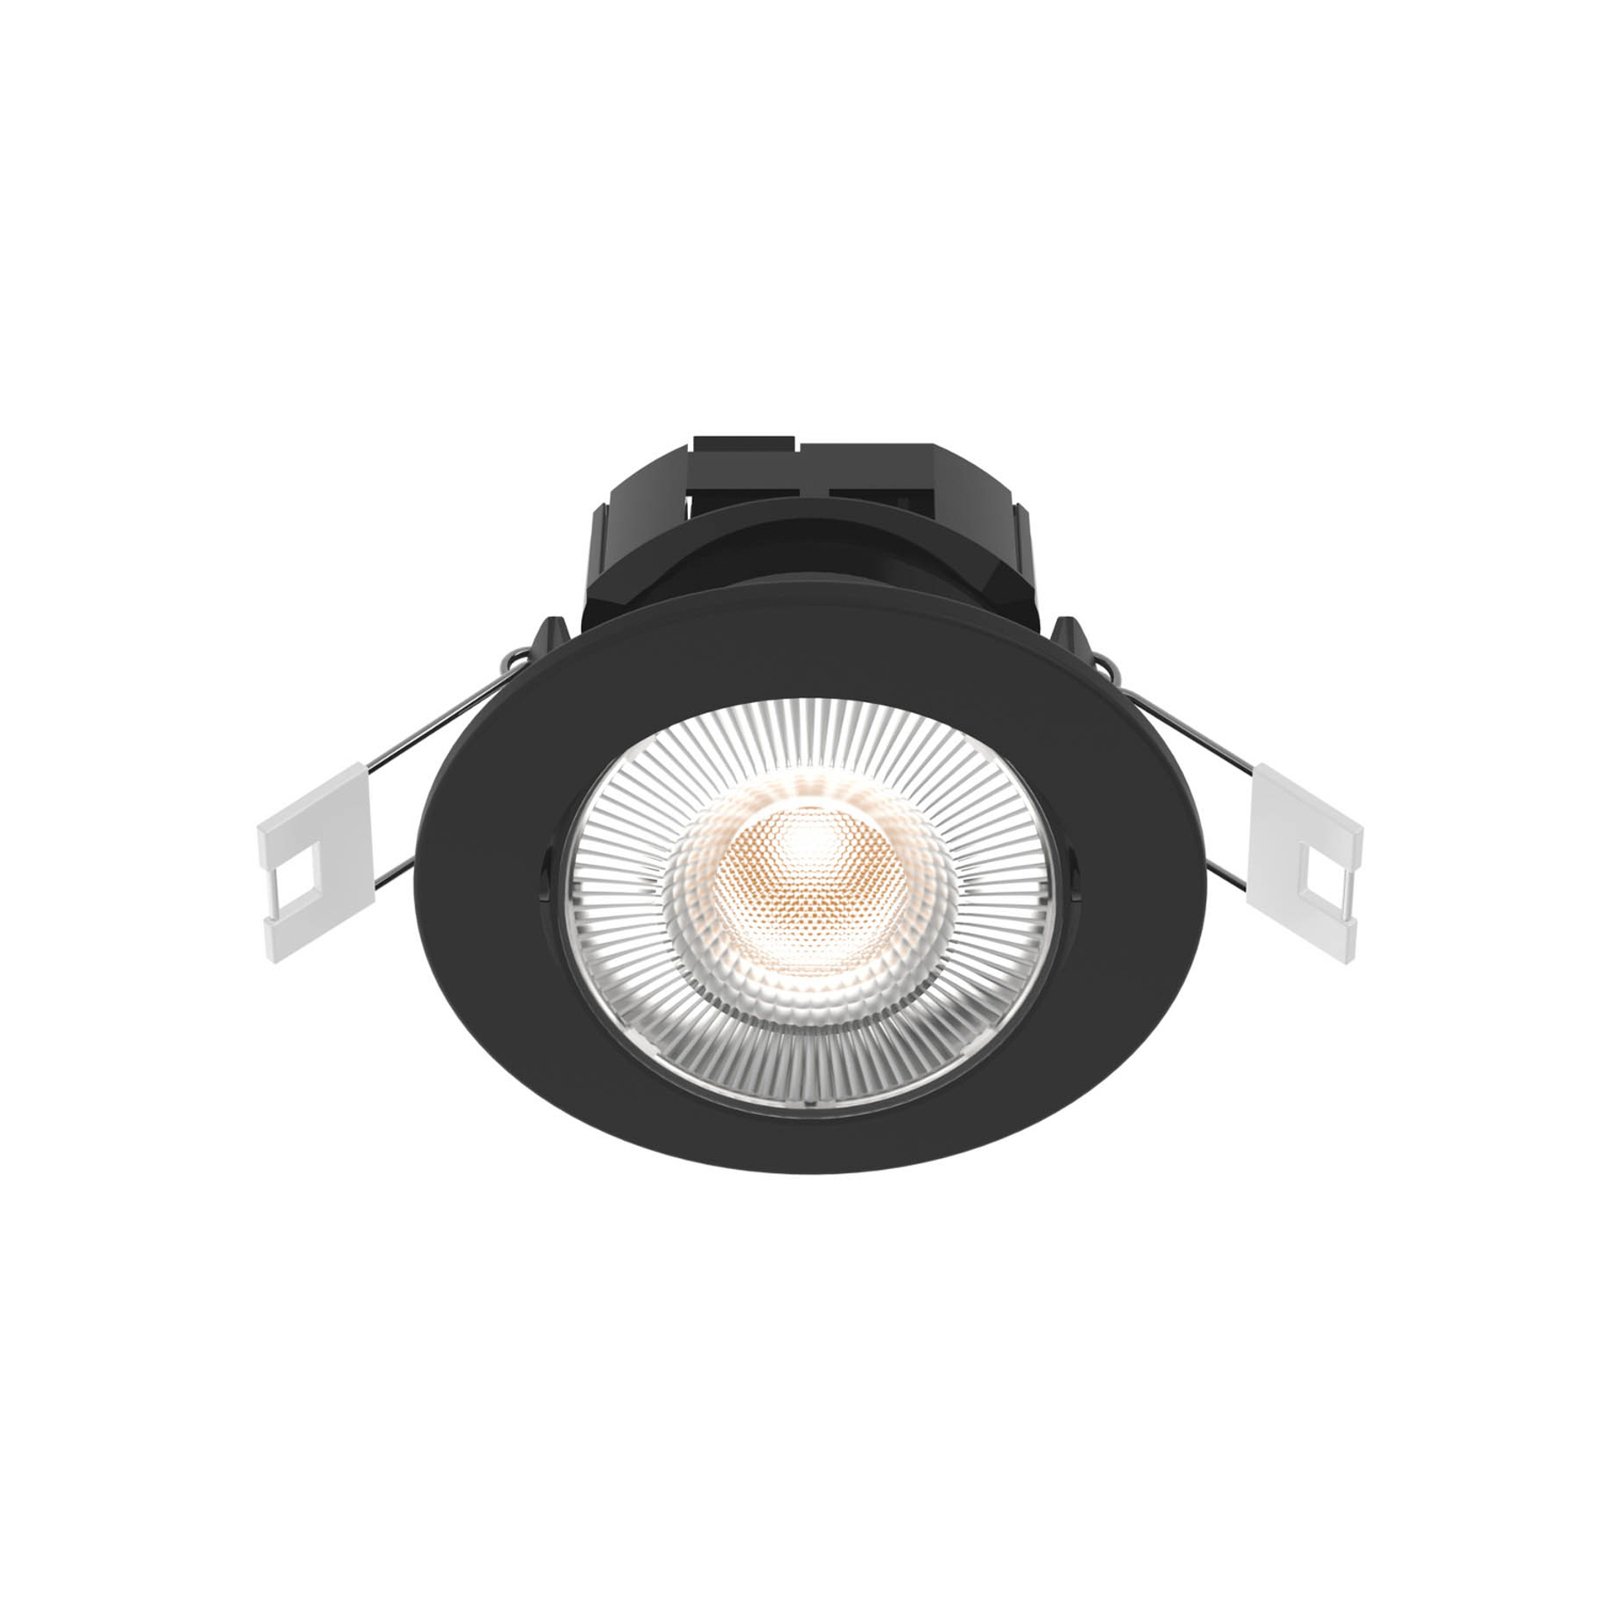 Calex Smart Downlight plafond inbouwlamp, zwart